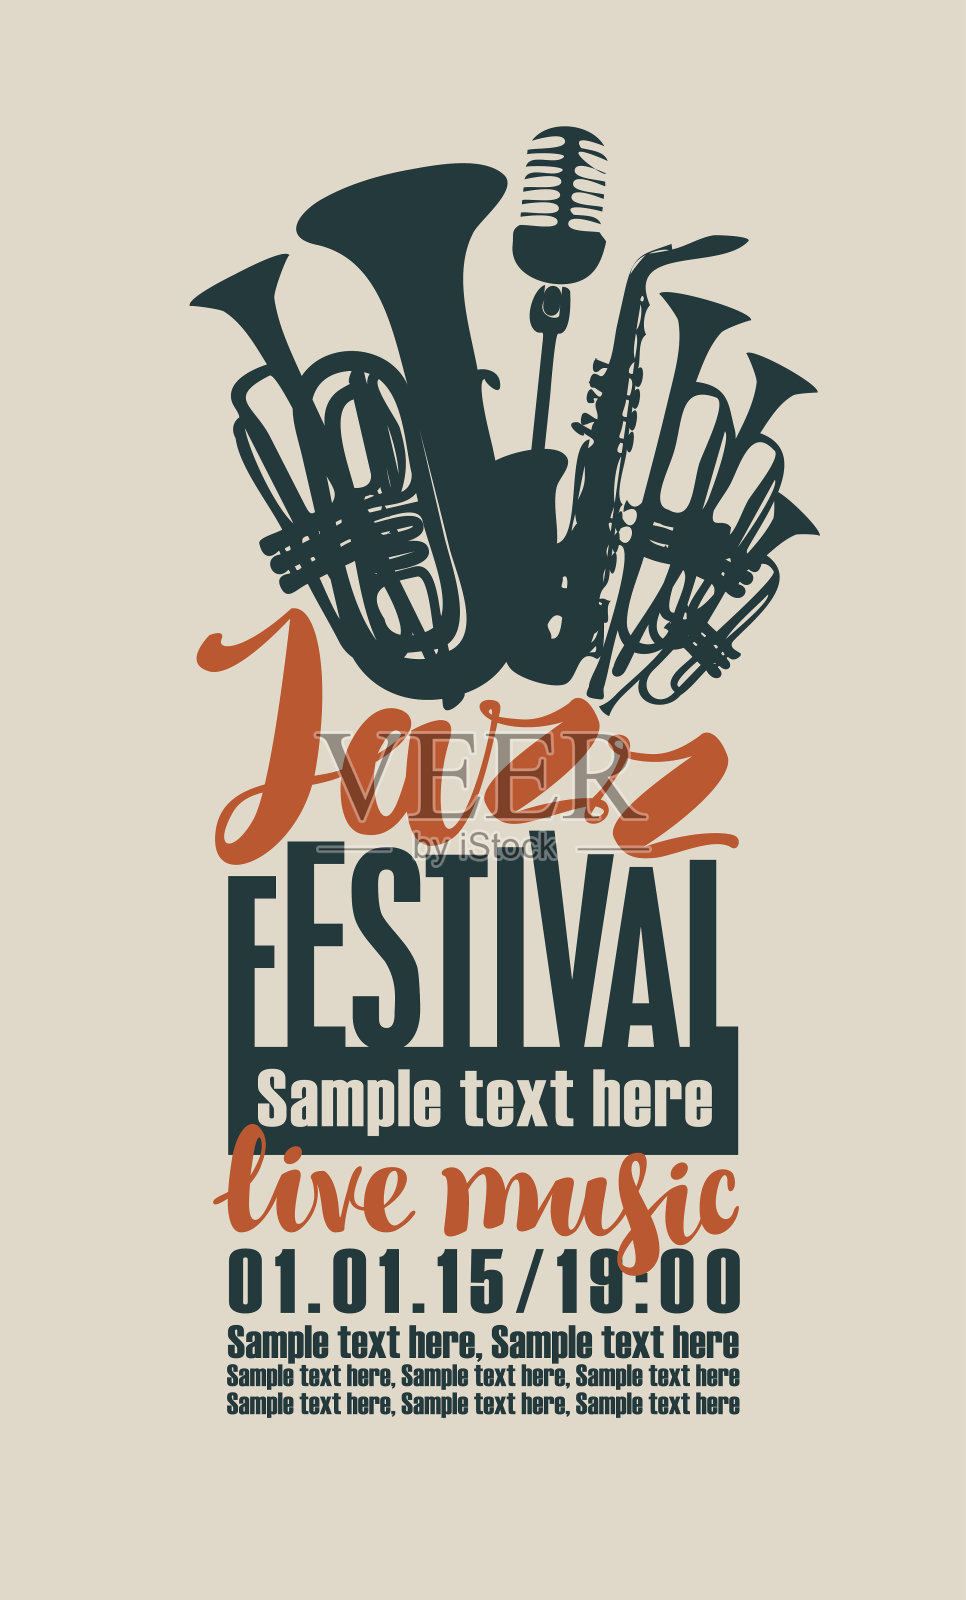 爵士音乐节的海报插画图片素材